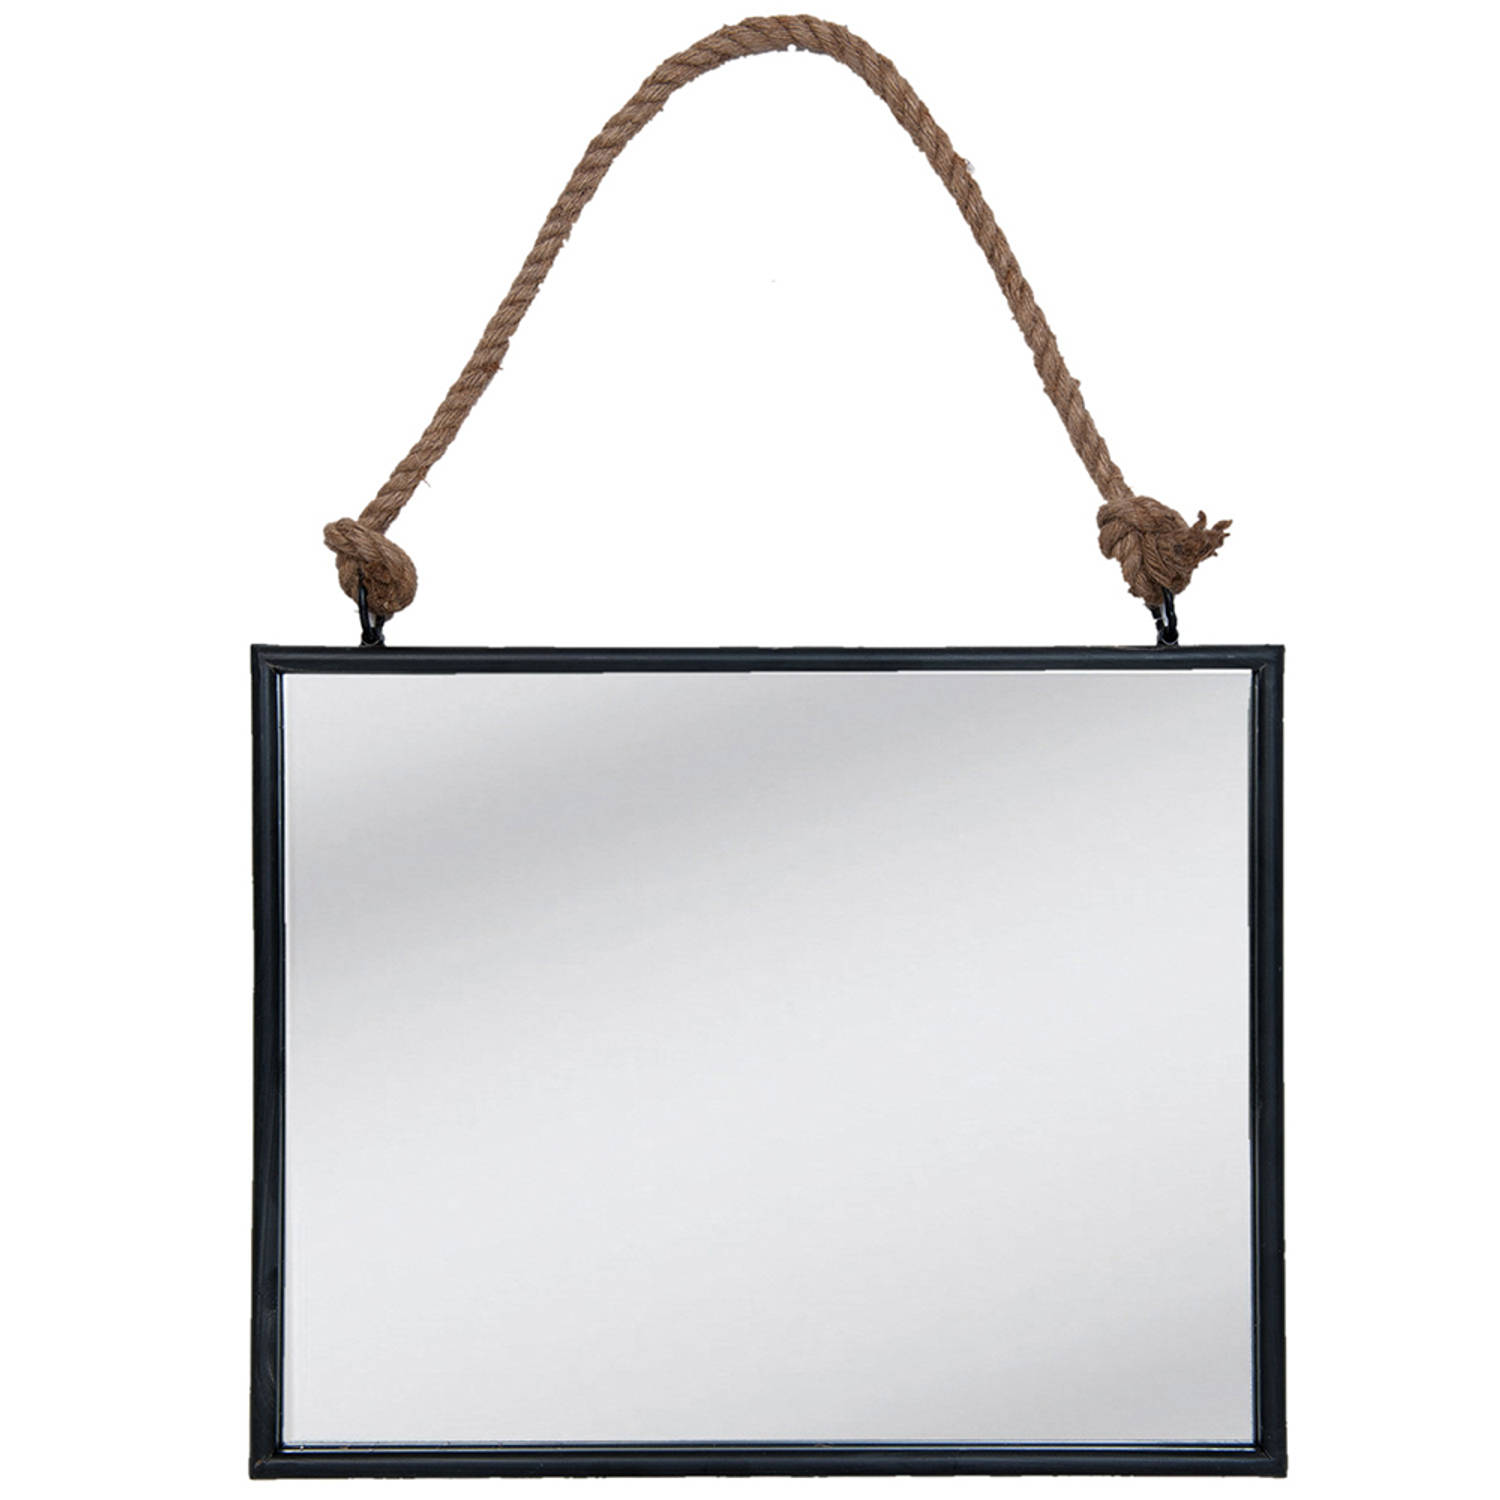 HAES DECO - Grote Rechthoekige Spiegel aan Touw - Kleur Zwart - Formaat 50x4x40 cm - Materiaal MDF / Metaal - Wandspiegel, Spiegel Rechthoek